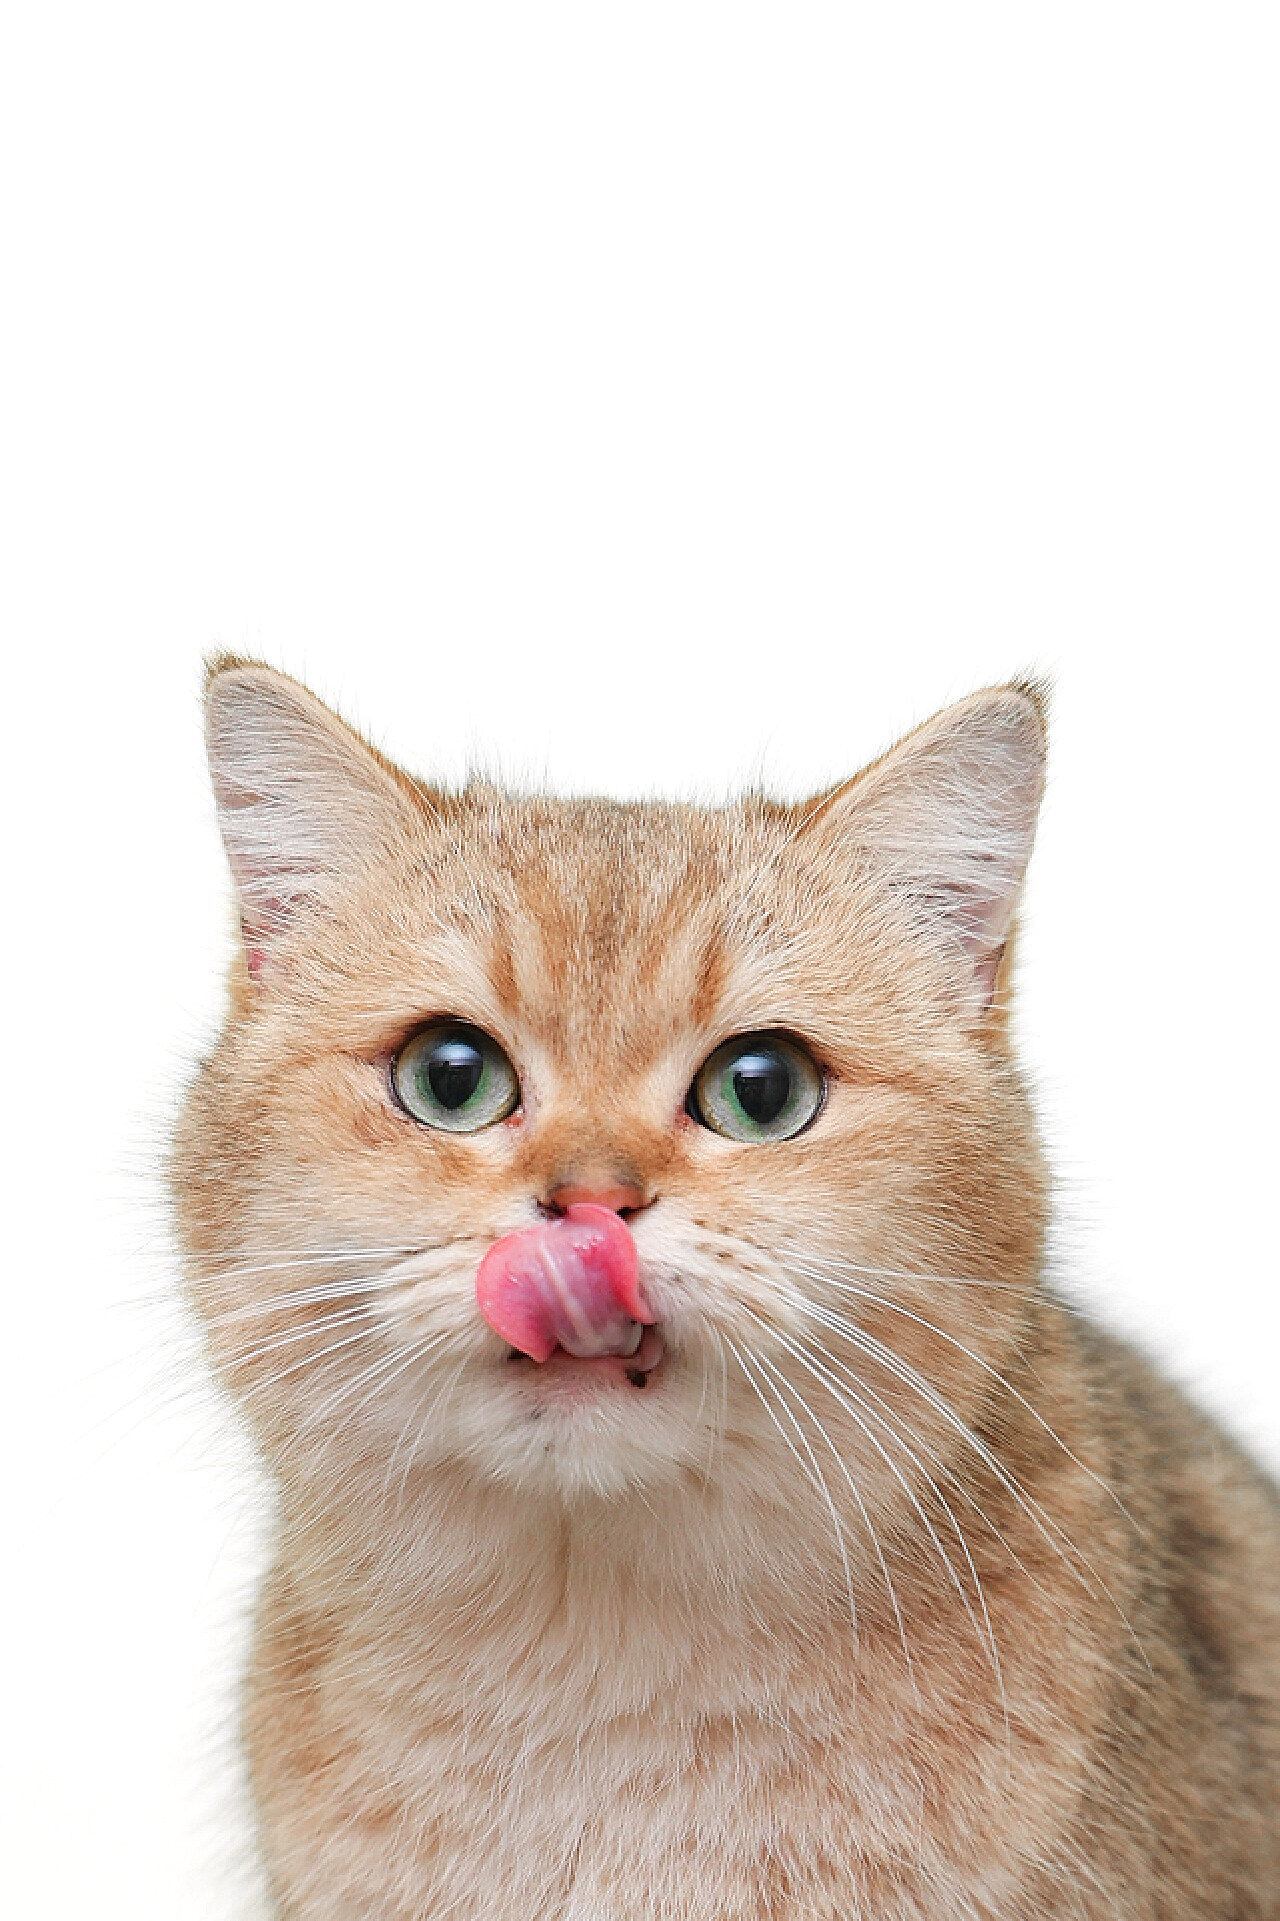 吐舌头的白猫咪 - 高清图片，堆糖，美图壁纸兴趣社区